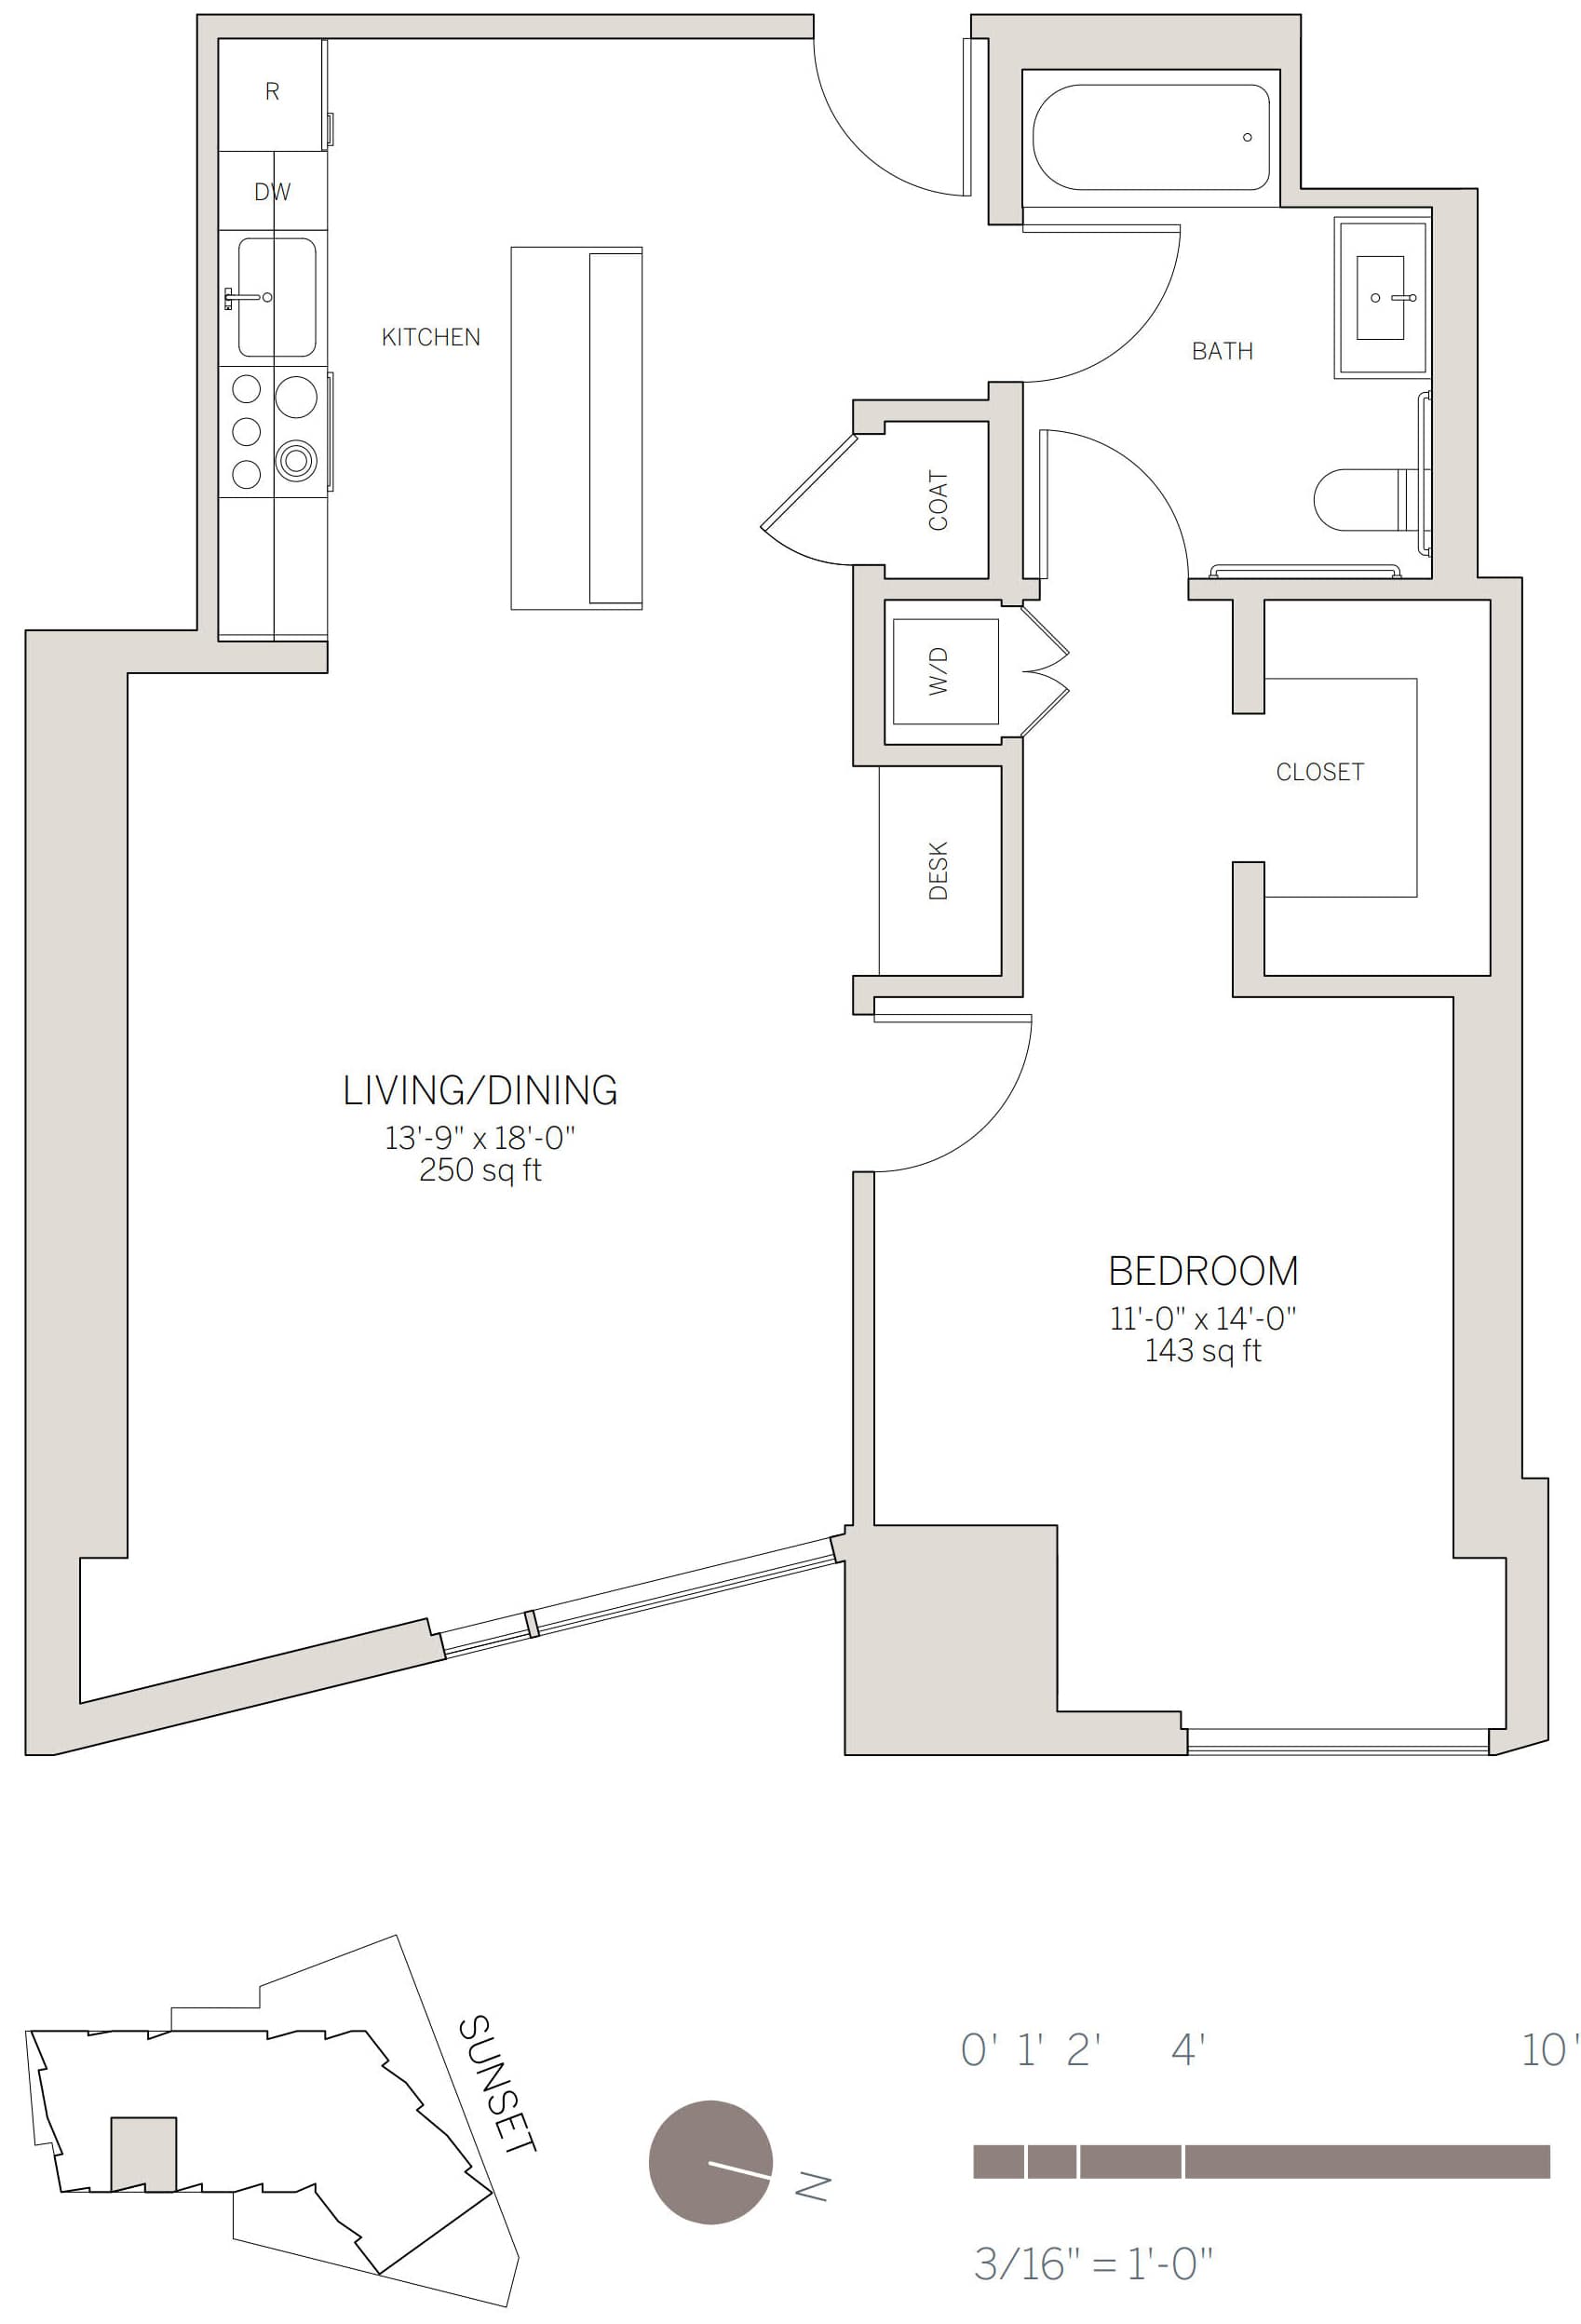 1 Bedroom Plan with Corner Living Room